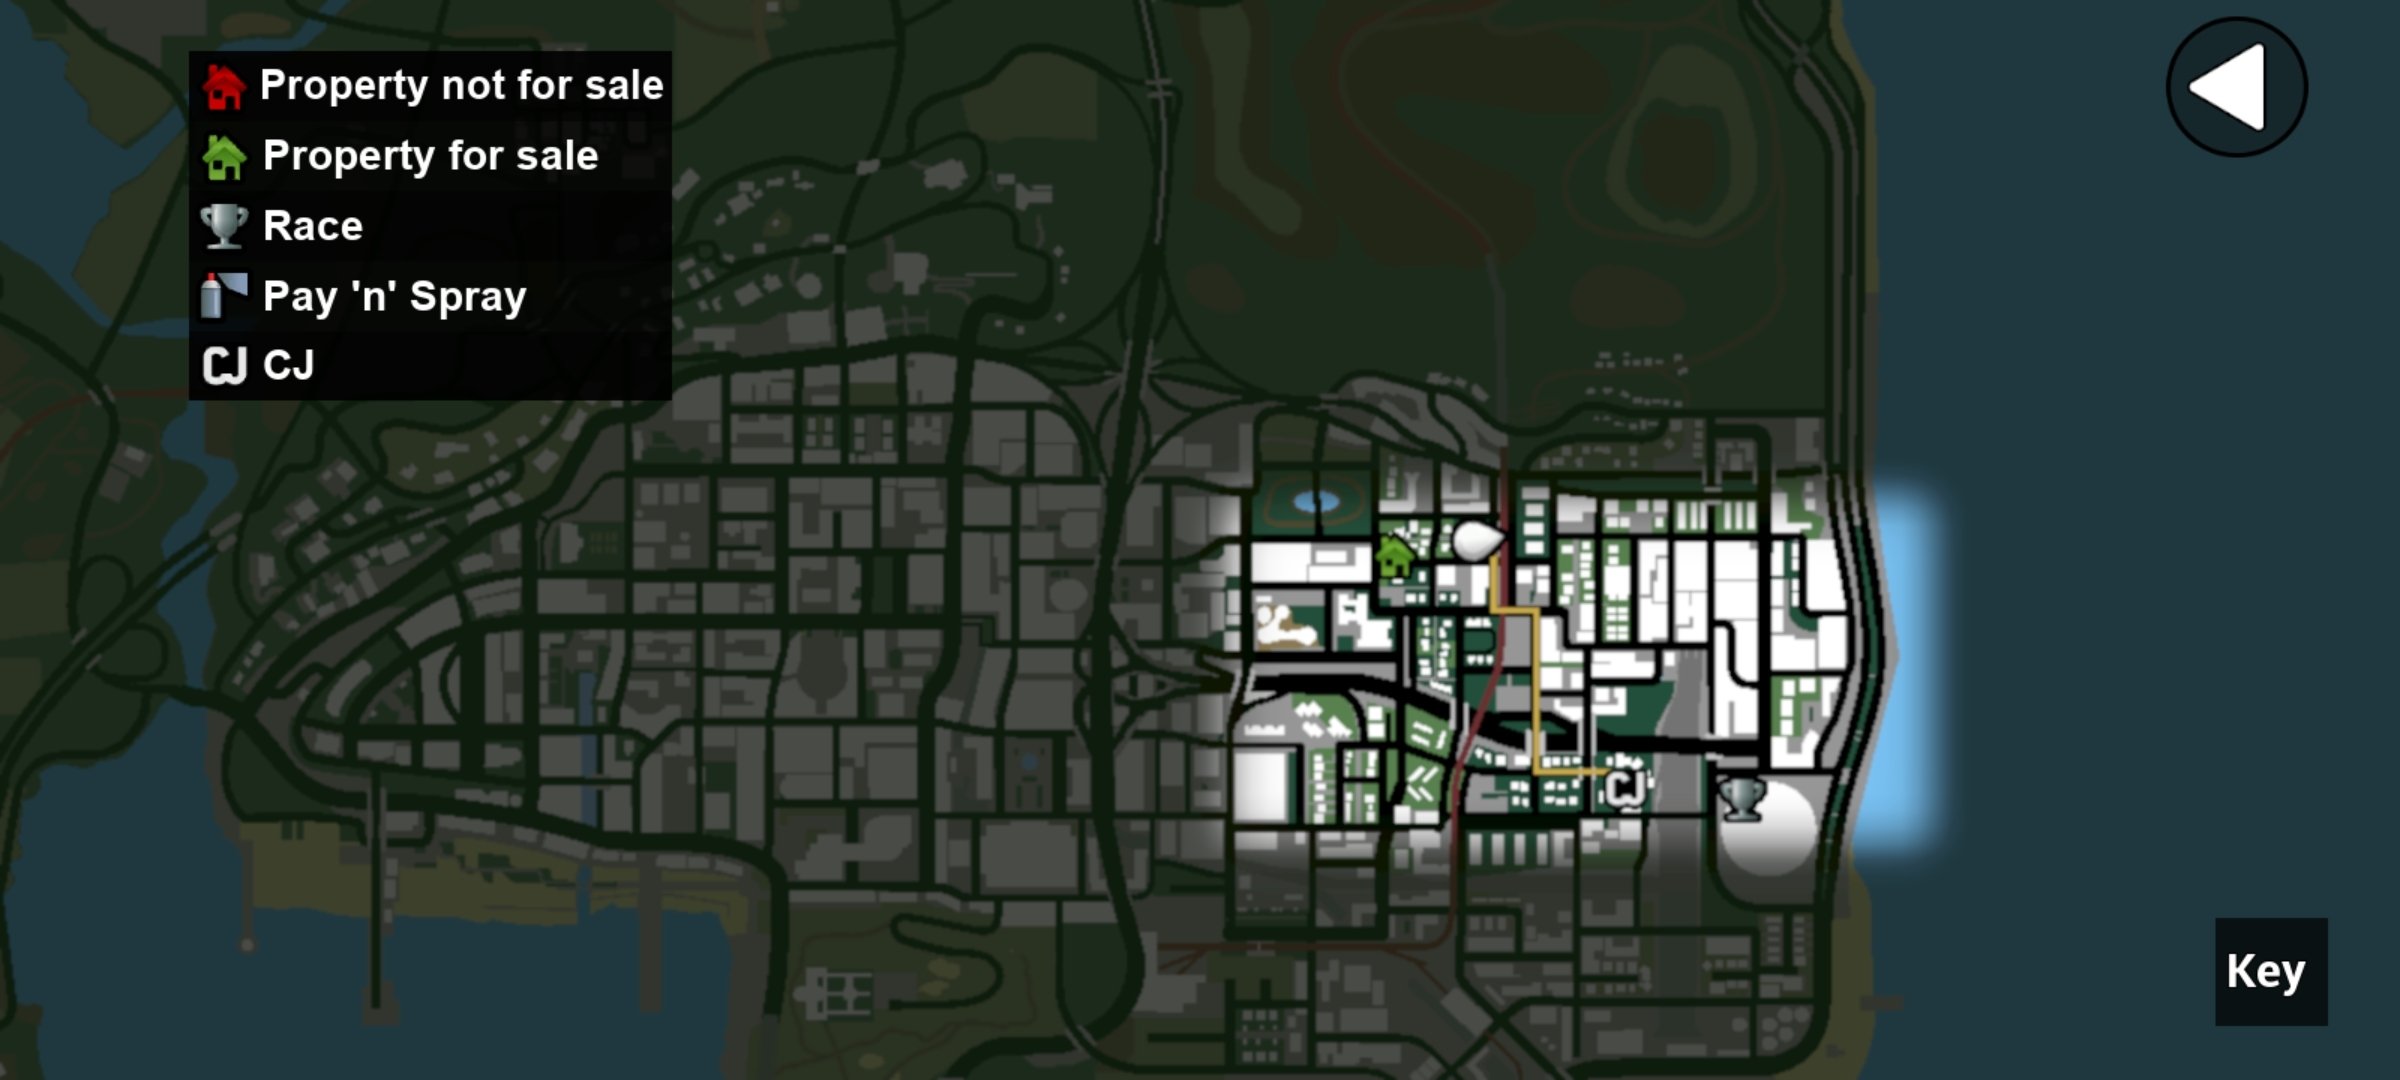 Novo GTA San Andreas para celular 🔥 . Links dos jogos no meu perfil